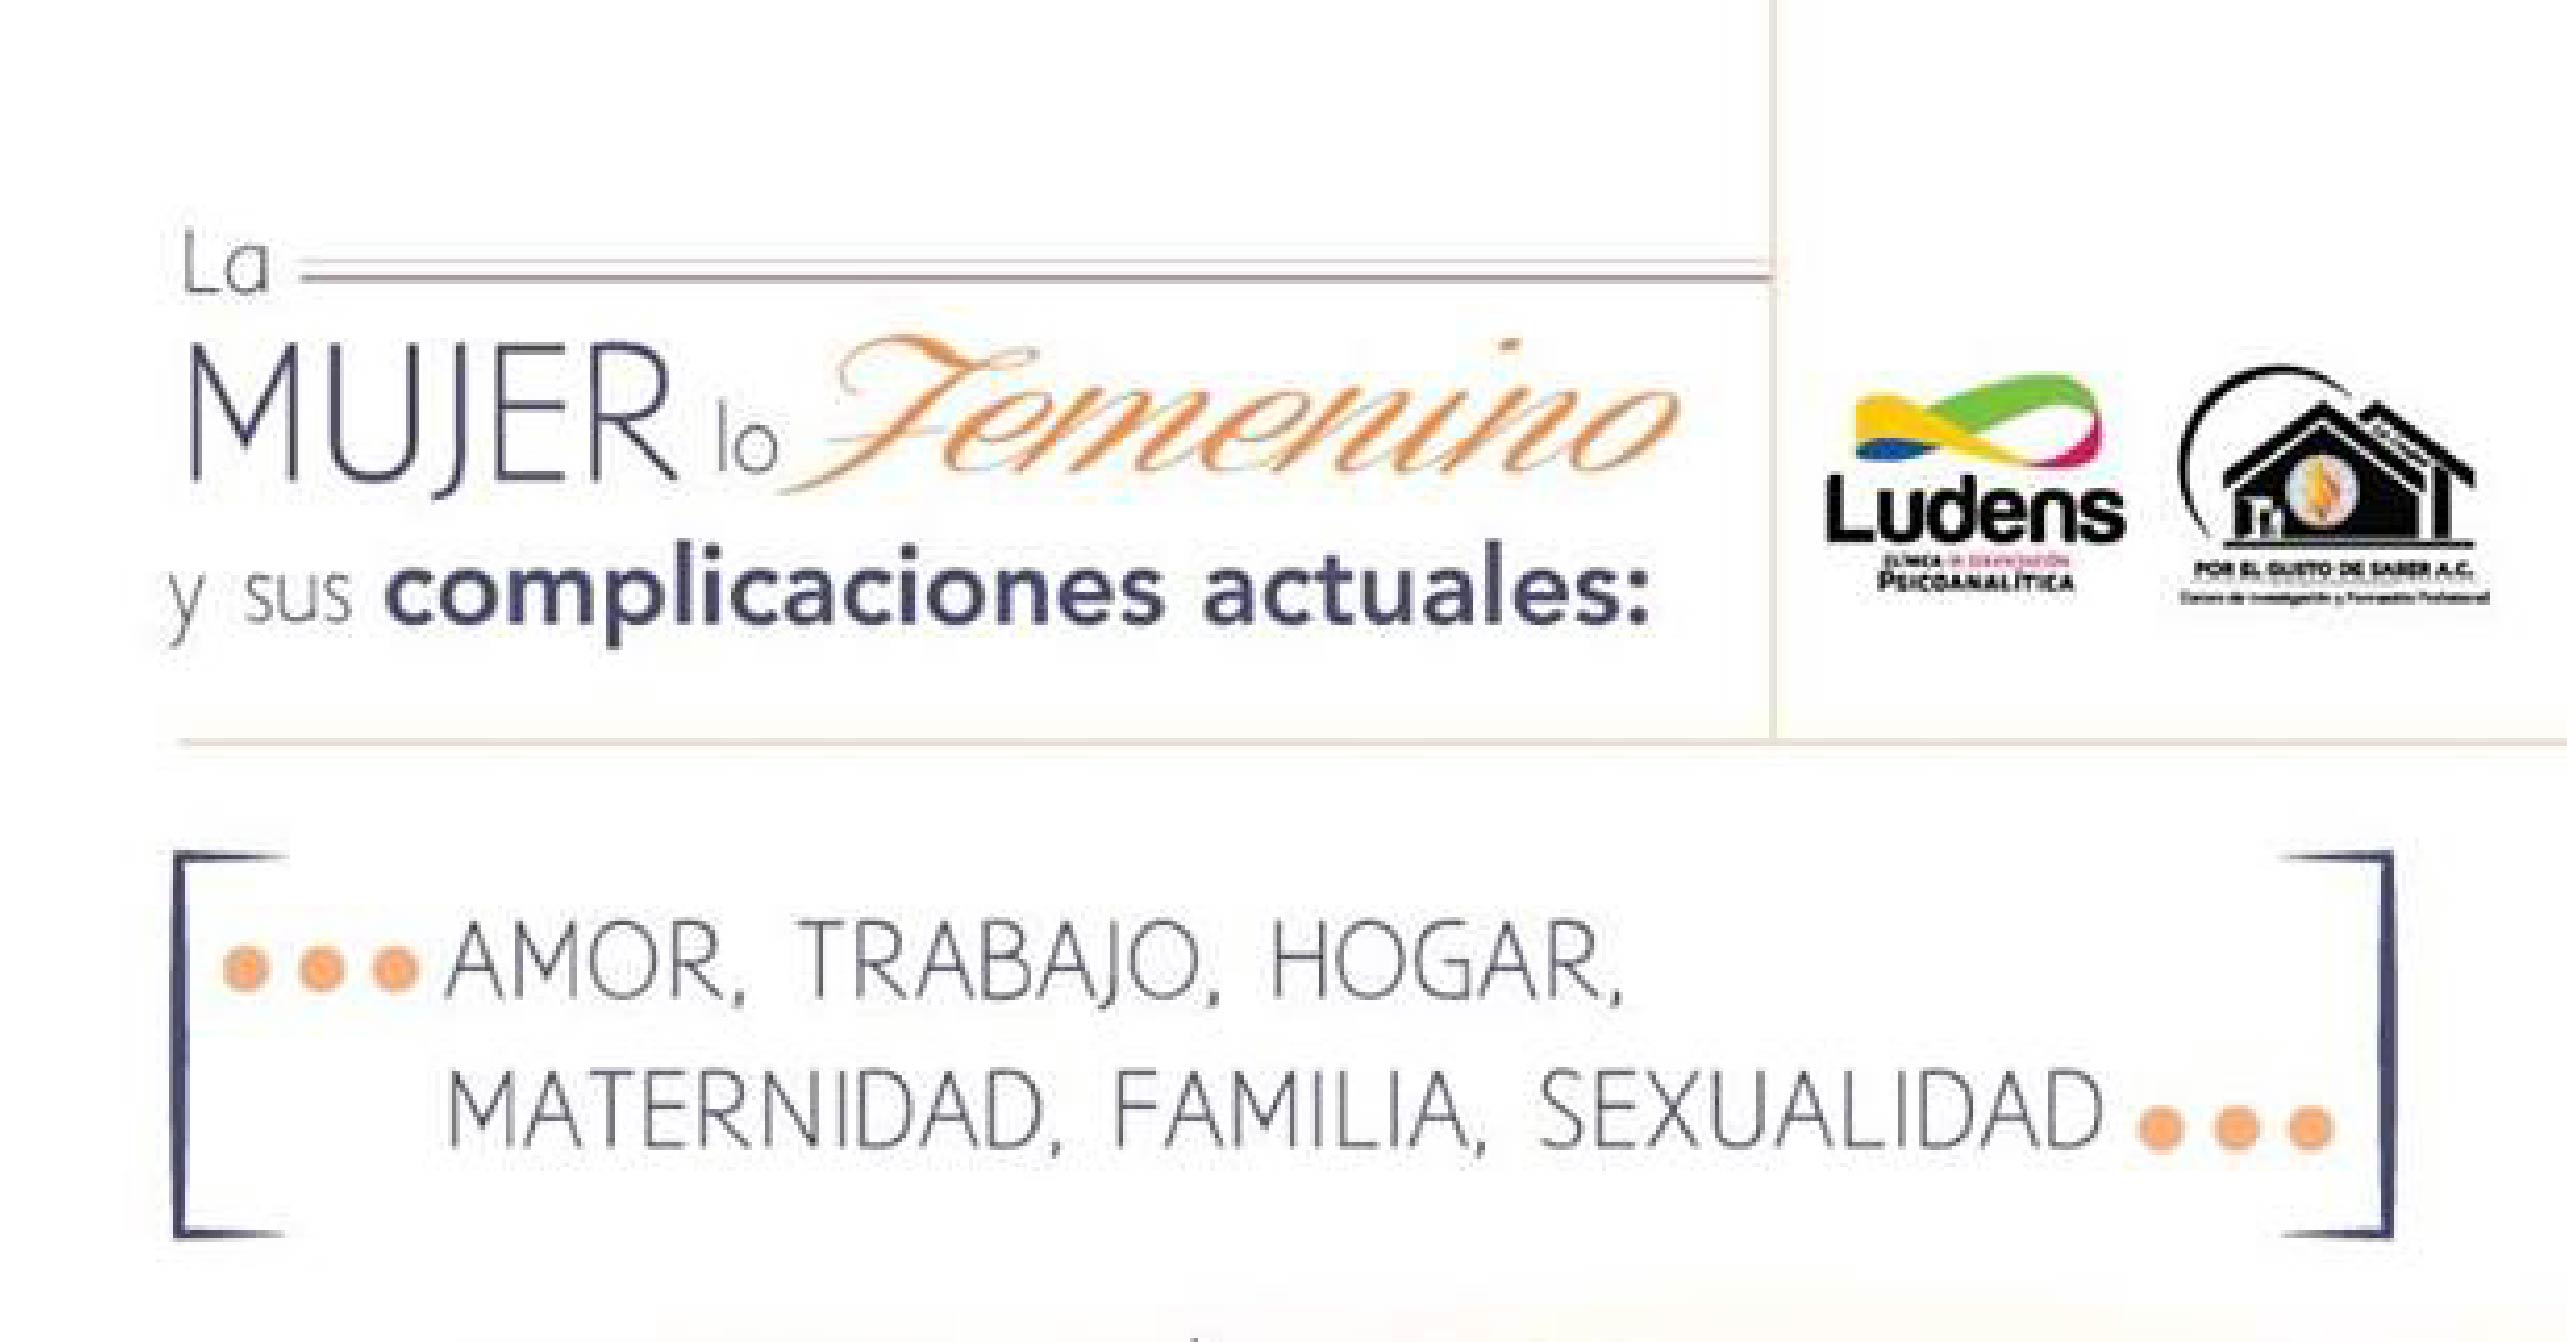 Invitación a la Conferencia que se llevará a cabo el próximo 8 de marzo, "La Mujer, lo femenino y sus complicaciones actuales" impartido por la Dra. Lilia Nieto Fernández en conmemoración del día de la mujer. 